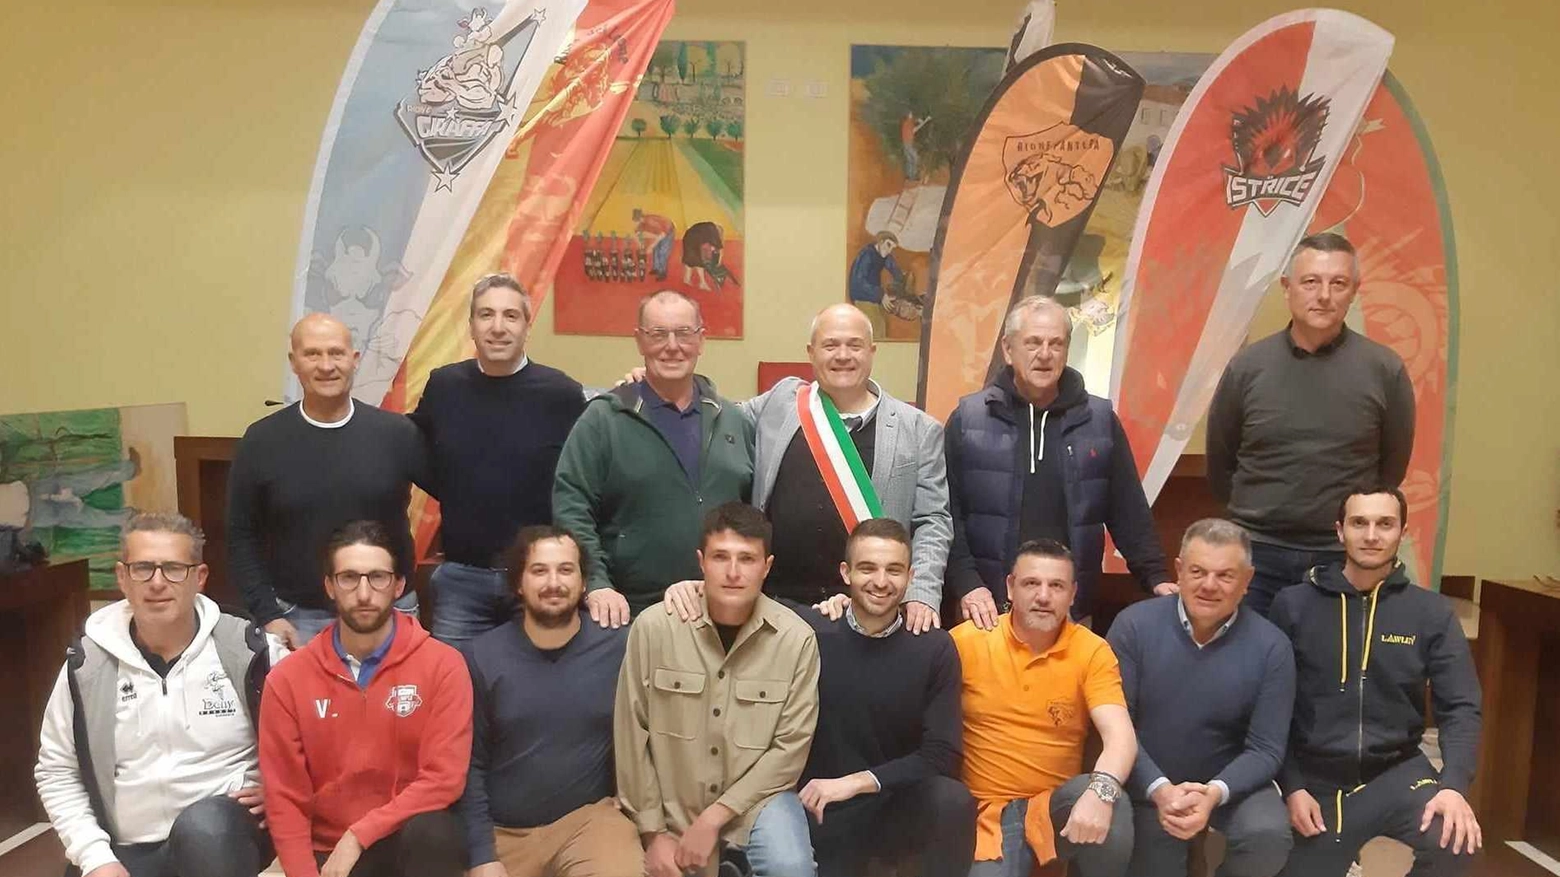 Undicesima edizione del Palio dei Rioni a Quarrata: sette squadre sfideranno la Pantera campione in carica in varie discipline sportive, con novità nel programma e finale prevista il 24 luglio.